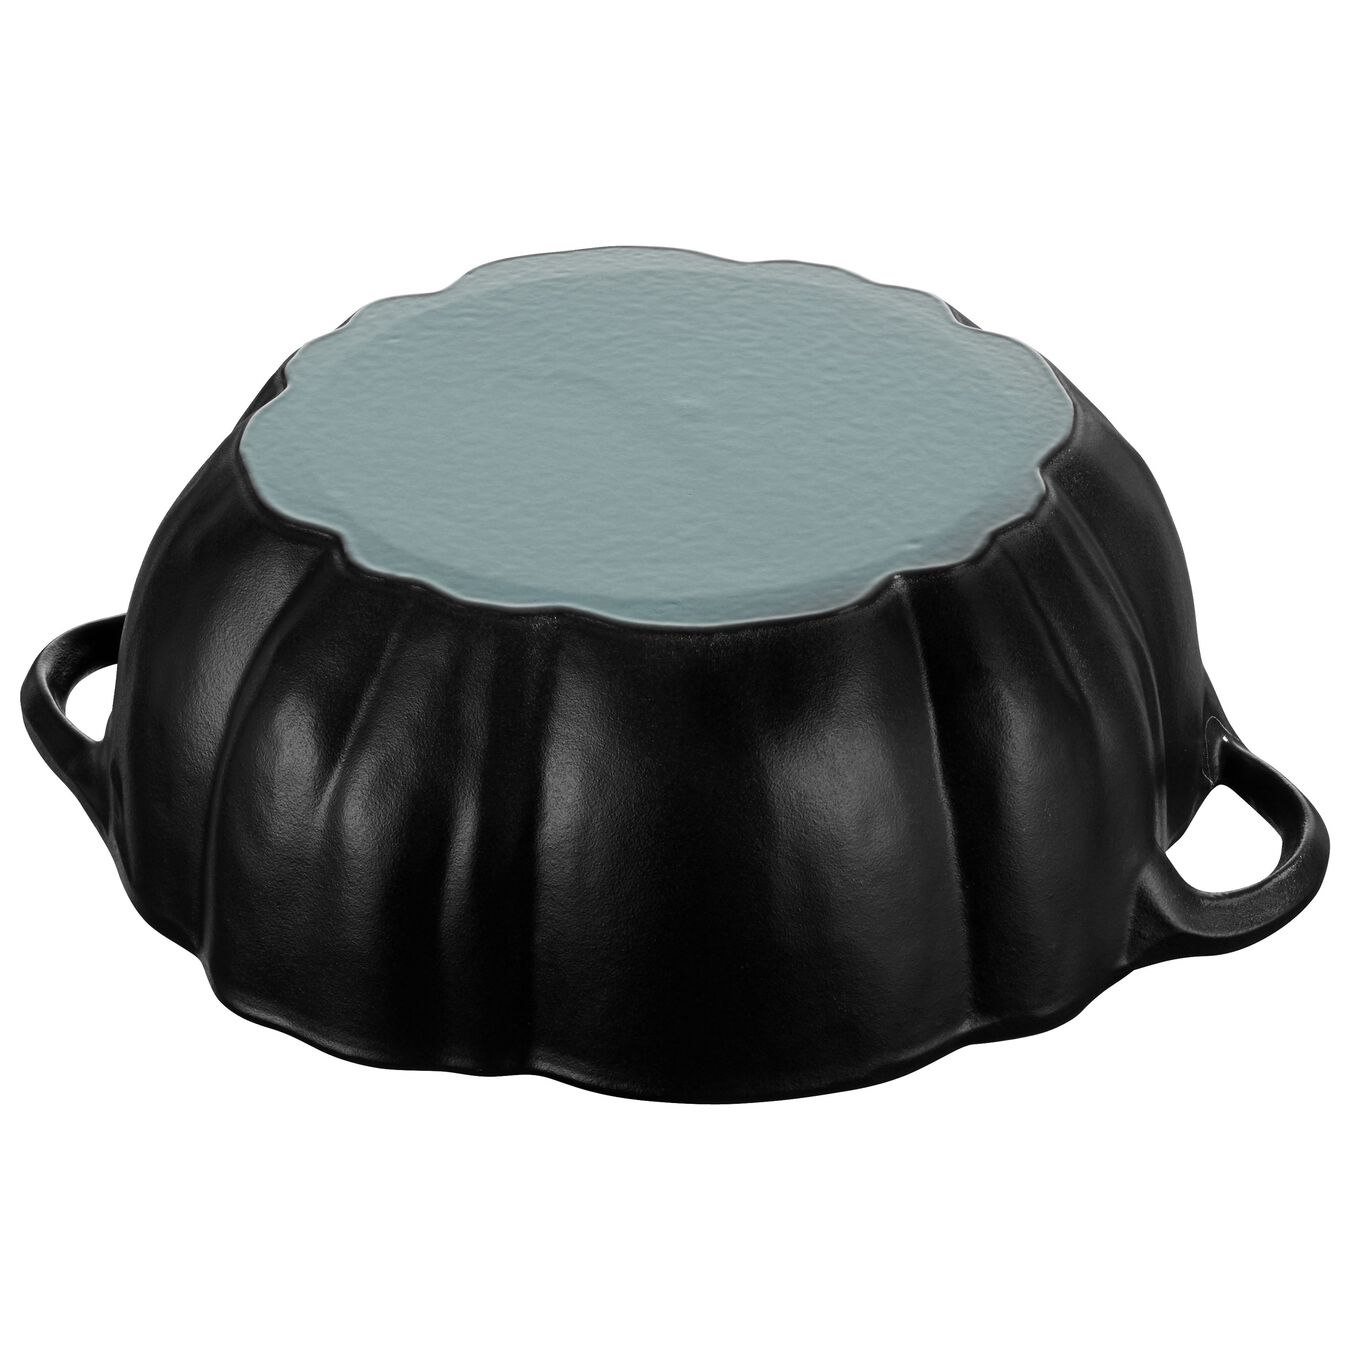 3.5 l cast iron pumpkin Cocotte, black,,large 6